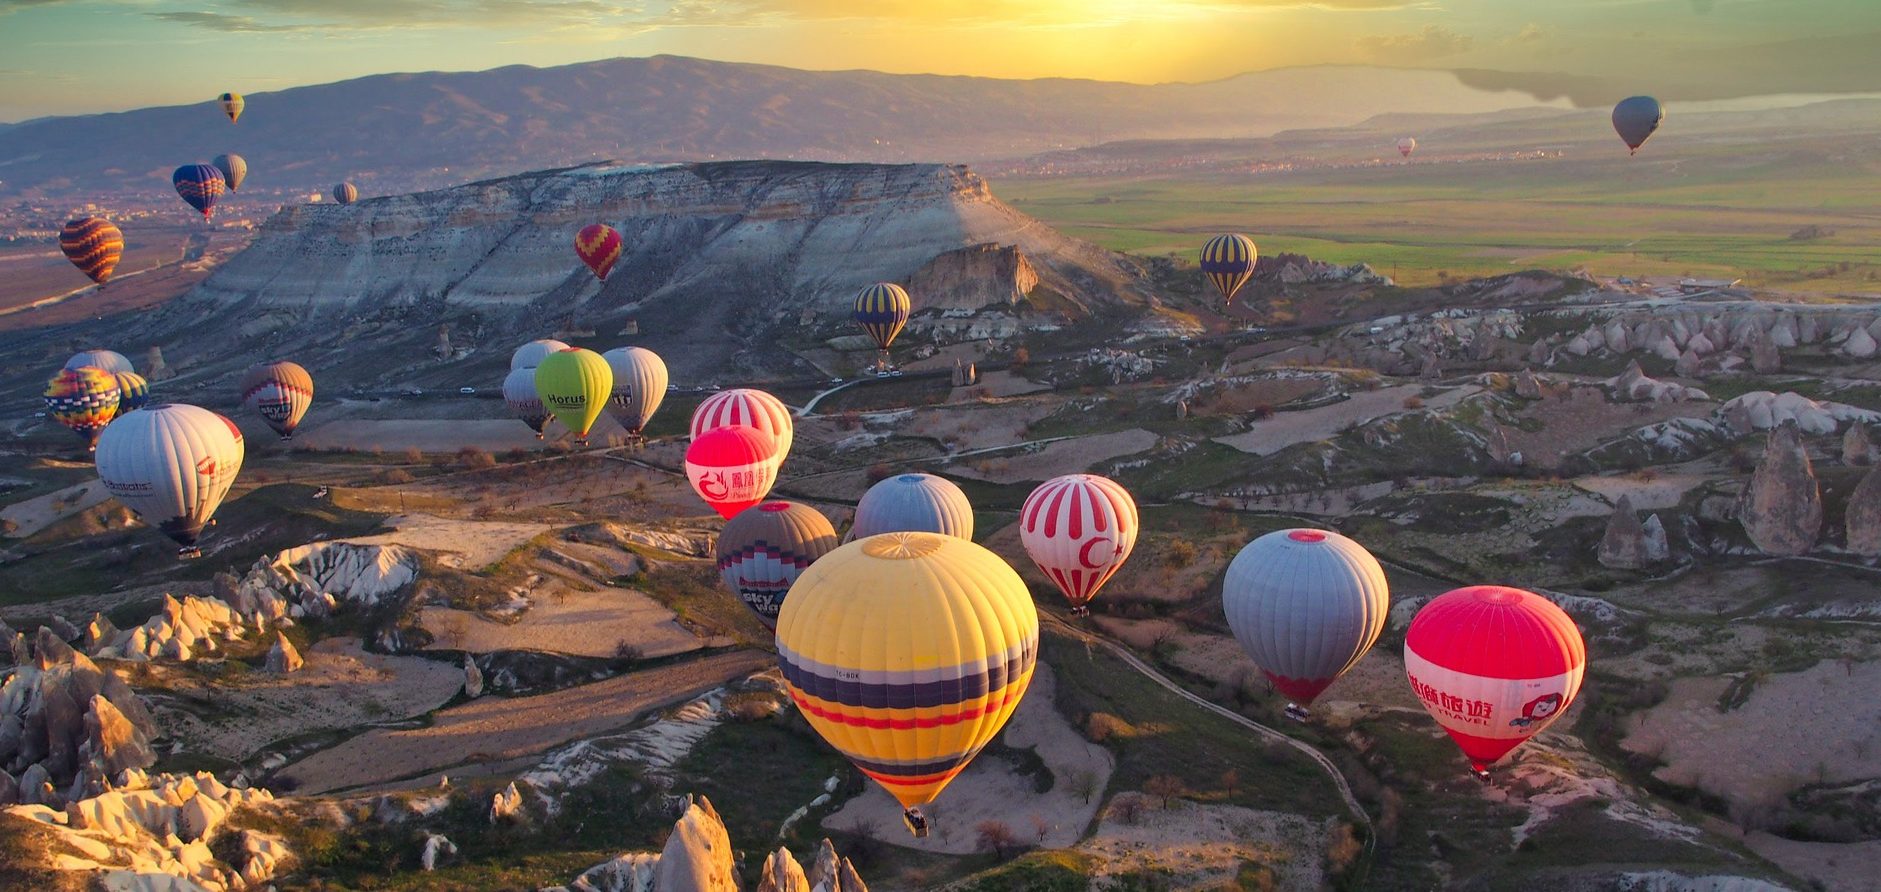 Kinh nghiệm du lịch Cappadocia - Thổ Nhĩ Kỳ, xứ sở thần tiên cùng ...